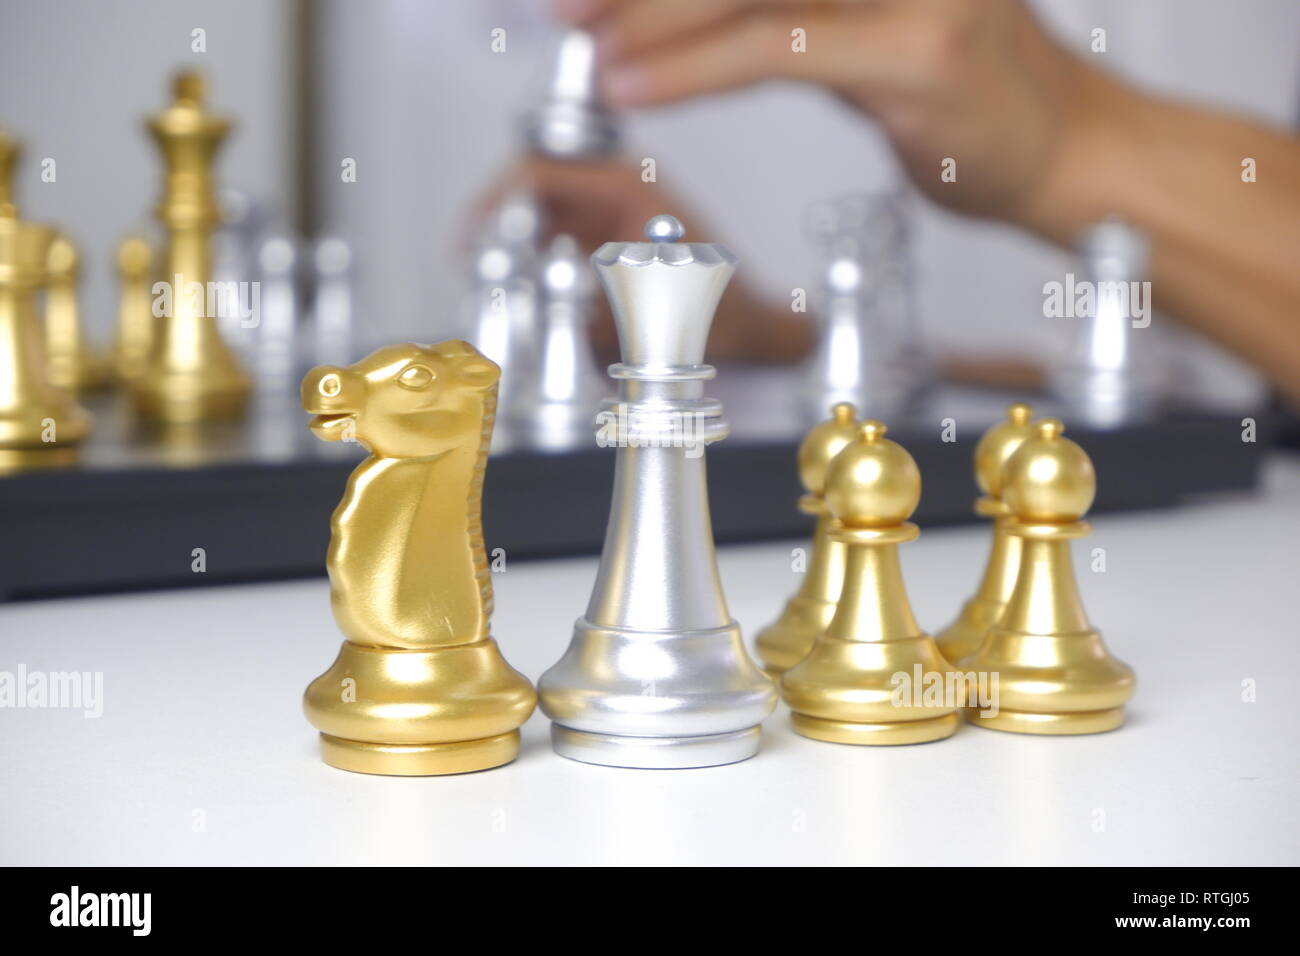 Geschäftsmann spielen Schach Spiel; Business Strategie, Führung und Management Konzept. Stockfoto